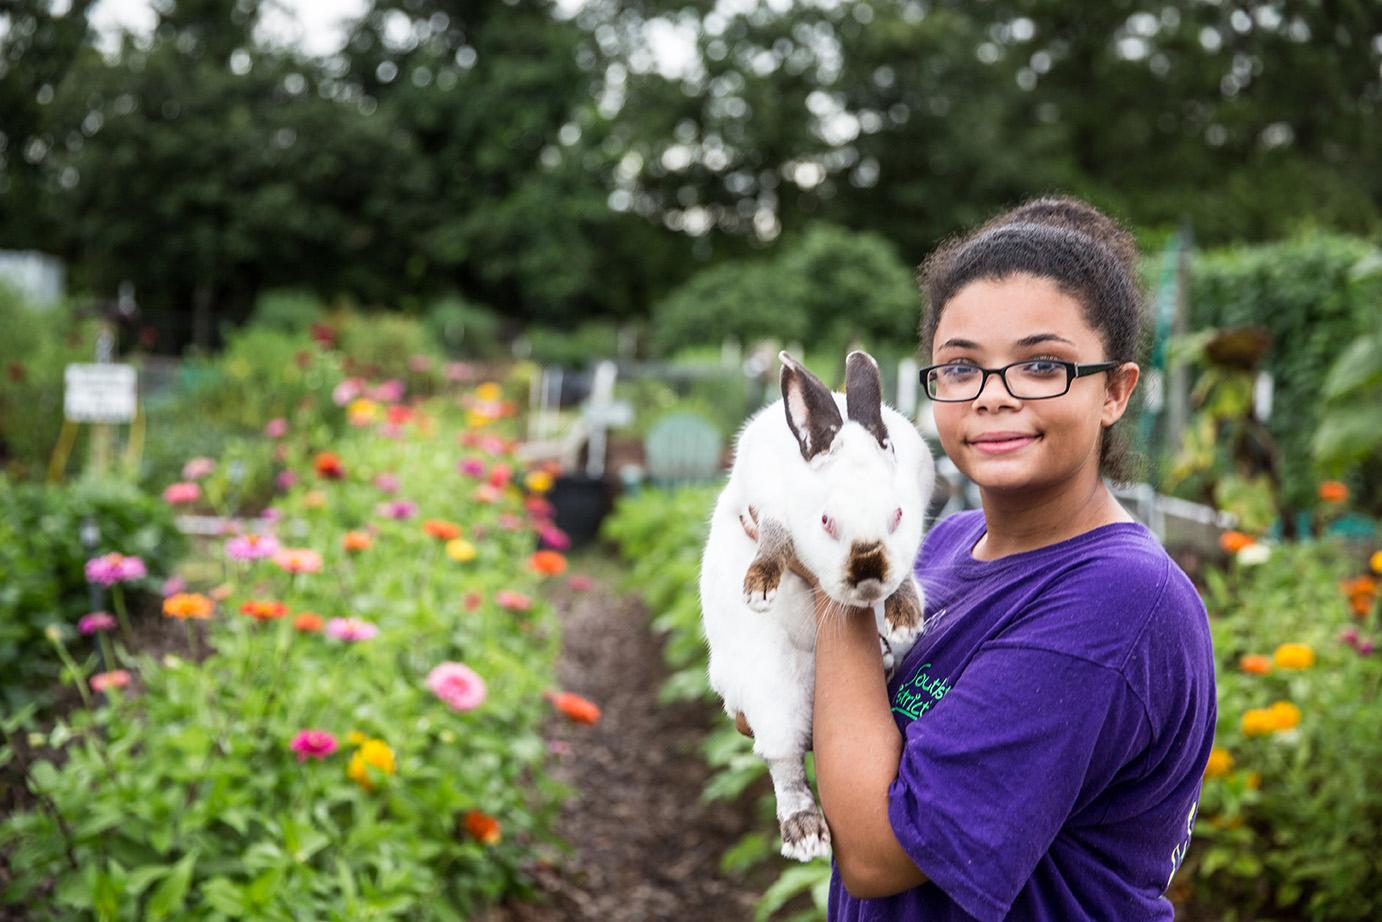 teen standing in garden holding pet rabbit